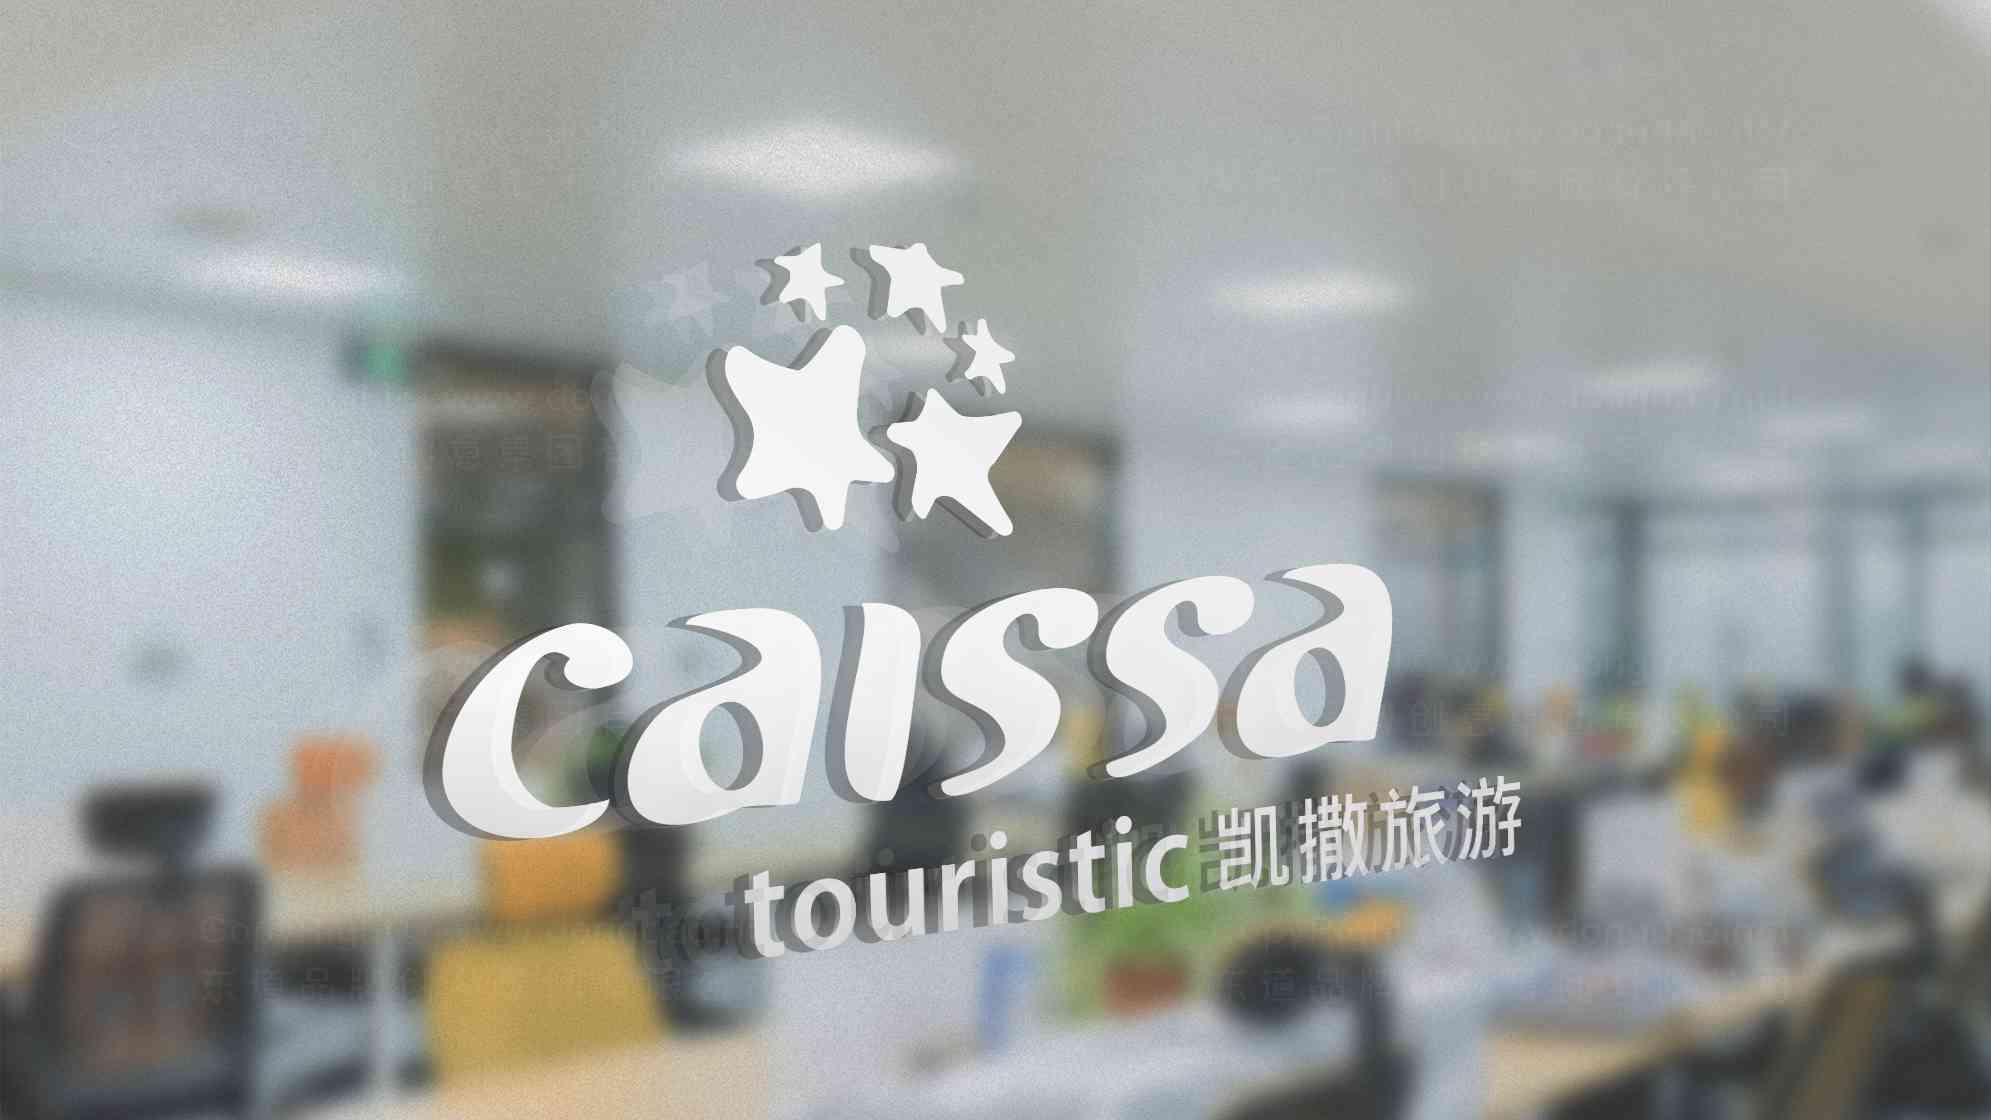 凯撒旅游logo设计图片素材_7